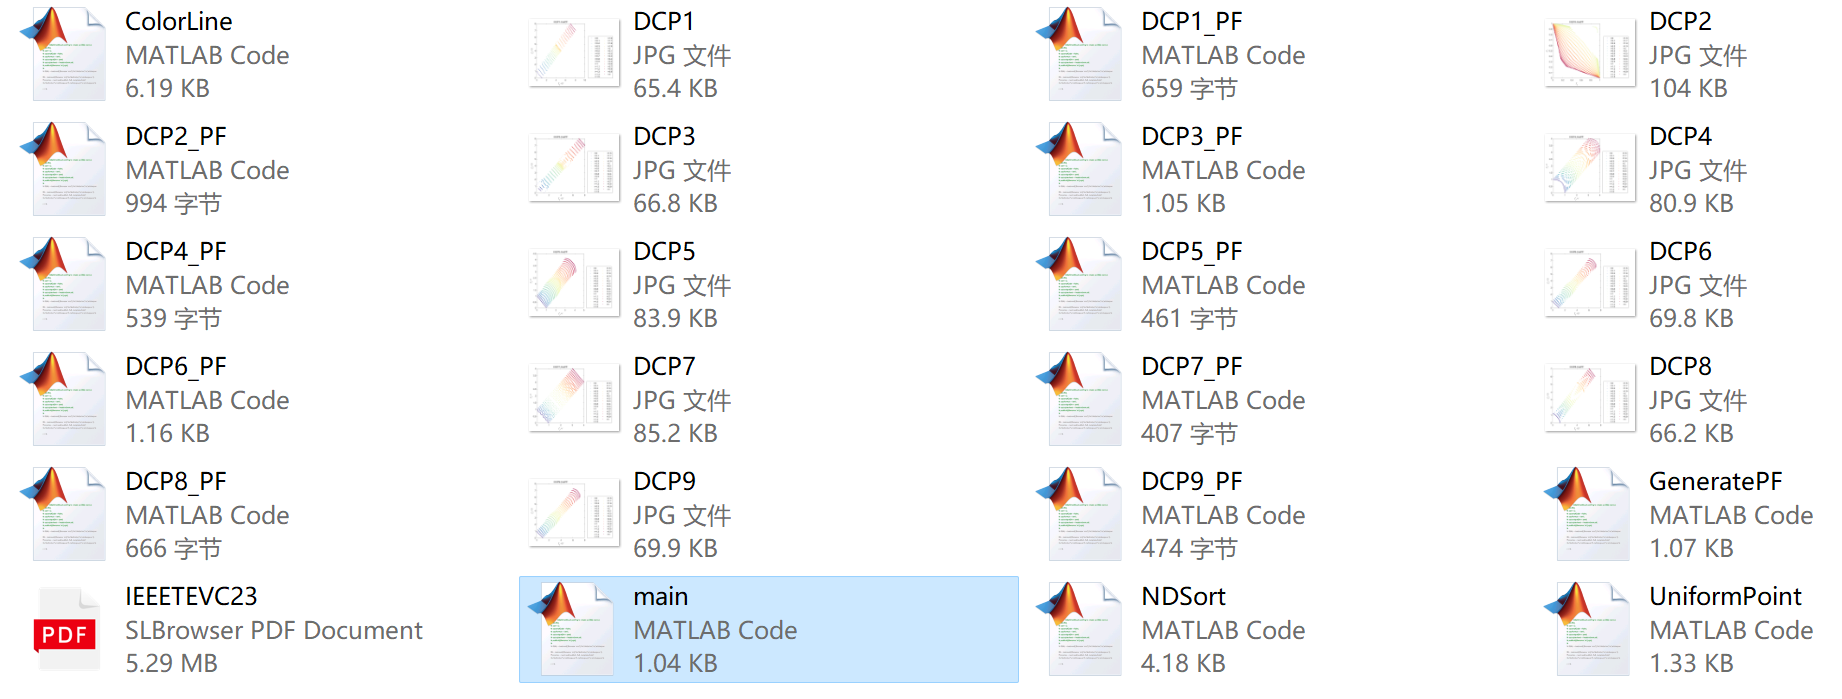 动态多目标优化：动态约束多目标优化测试集DCP1-DCP9的TruePF（提供MATLAB代码）